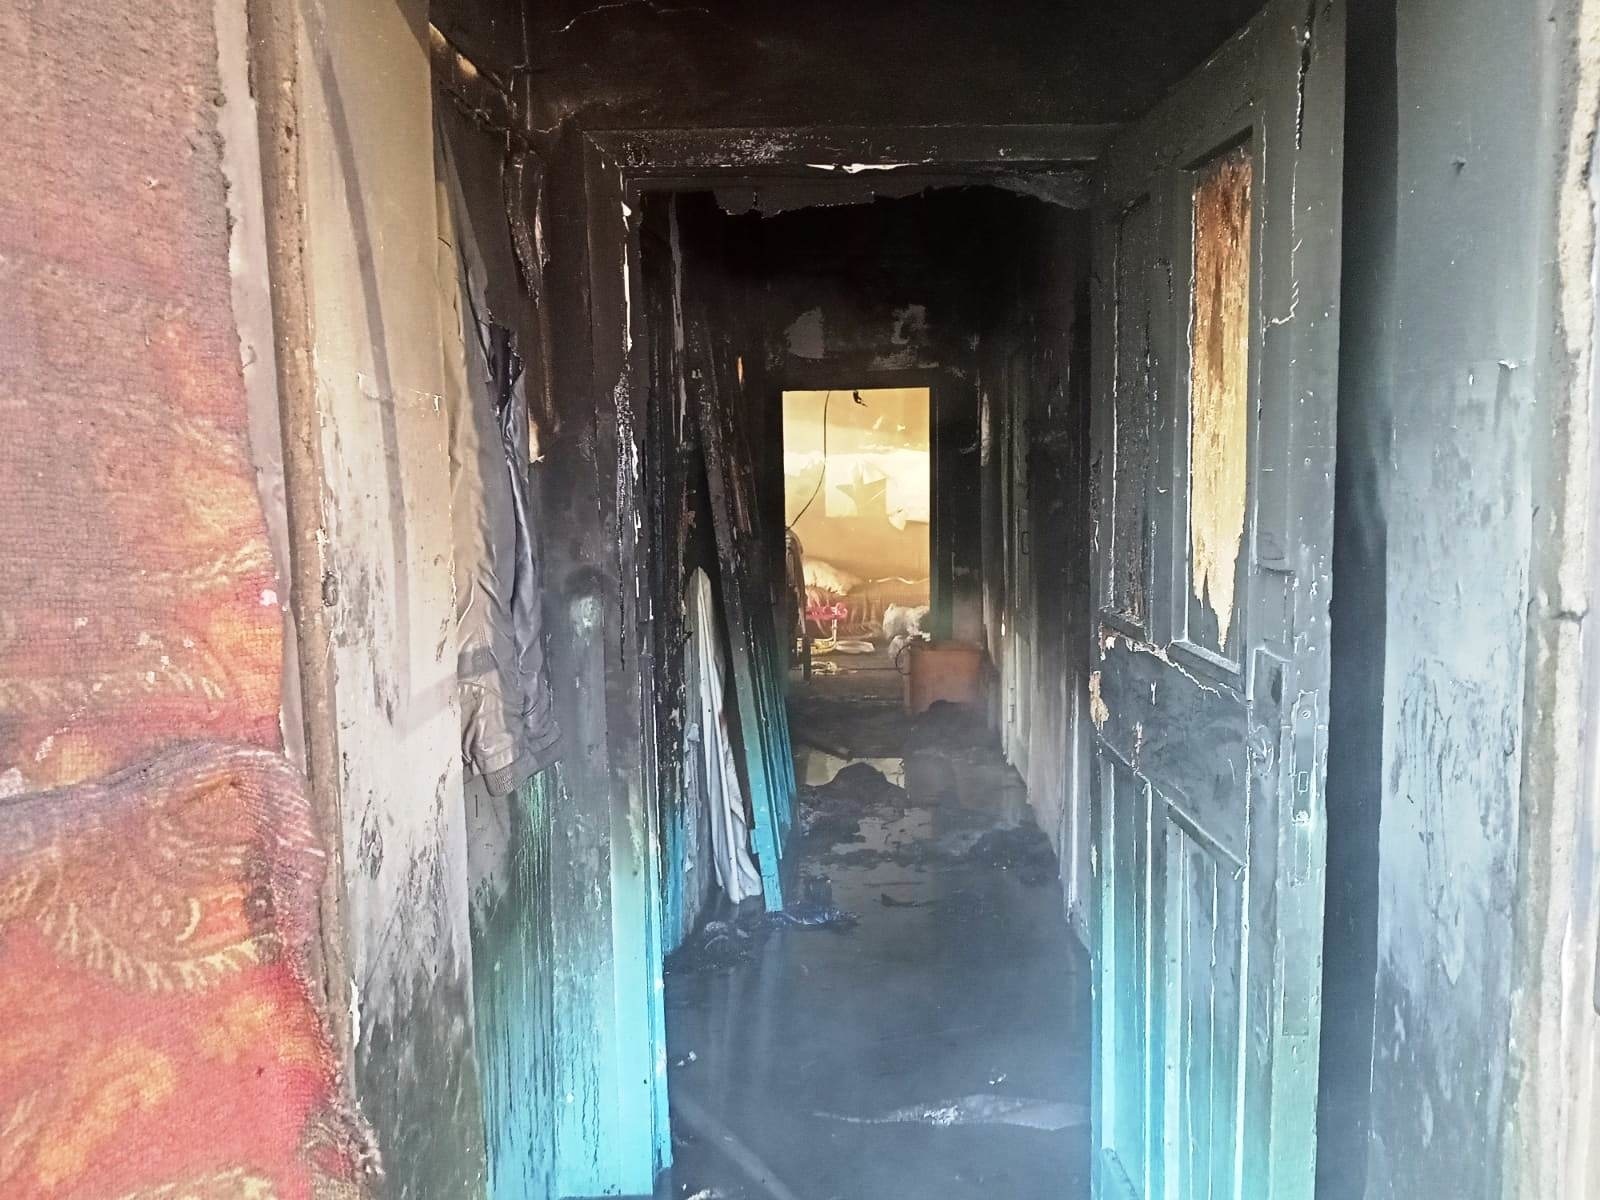 Четырехлетний ребенок погиб при пожаре в Челябинской области